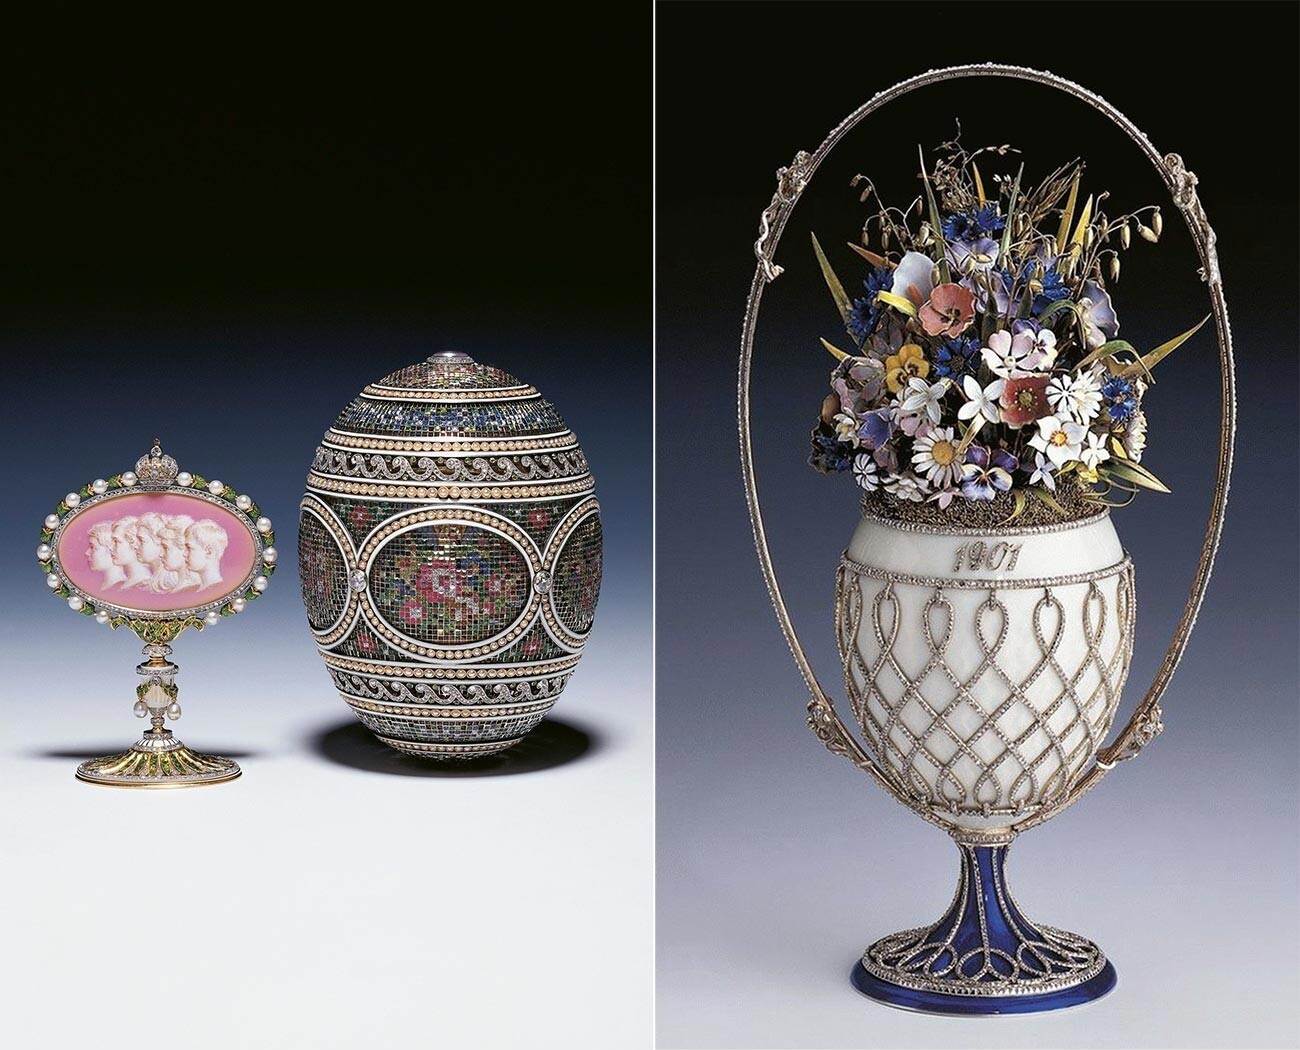 Пасхальные яйца Фаберже «Мозаичное» и «Корзина полевых цветов» были проданы в 1930-х годах английской королевской семье